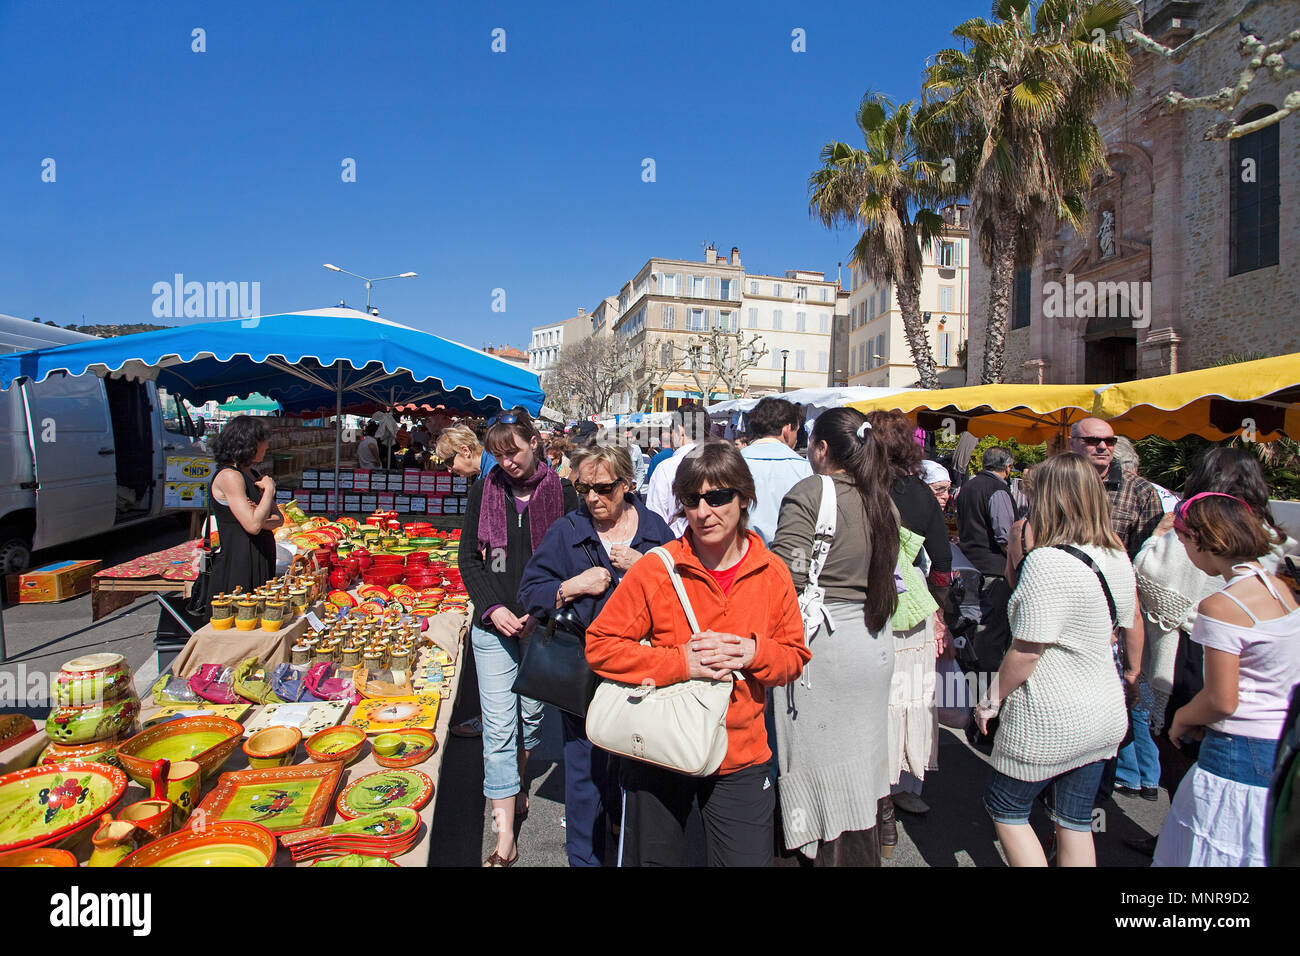 Street Market ein Hafen von La Ciotat, Bouches-du-Rhône der Region Provence-Alpes-Côte d'Azur, Südfrankreich, Frankreich, Europa Stockfoto